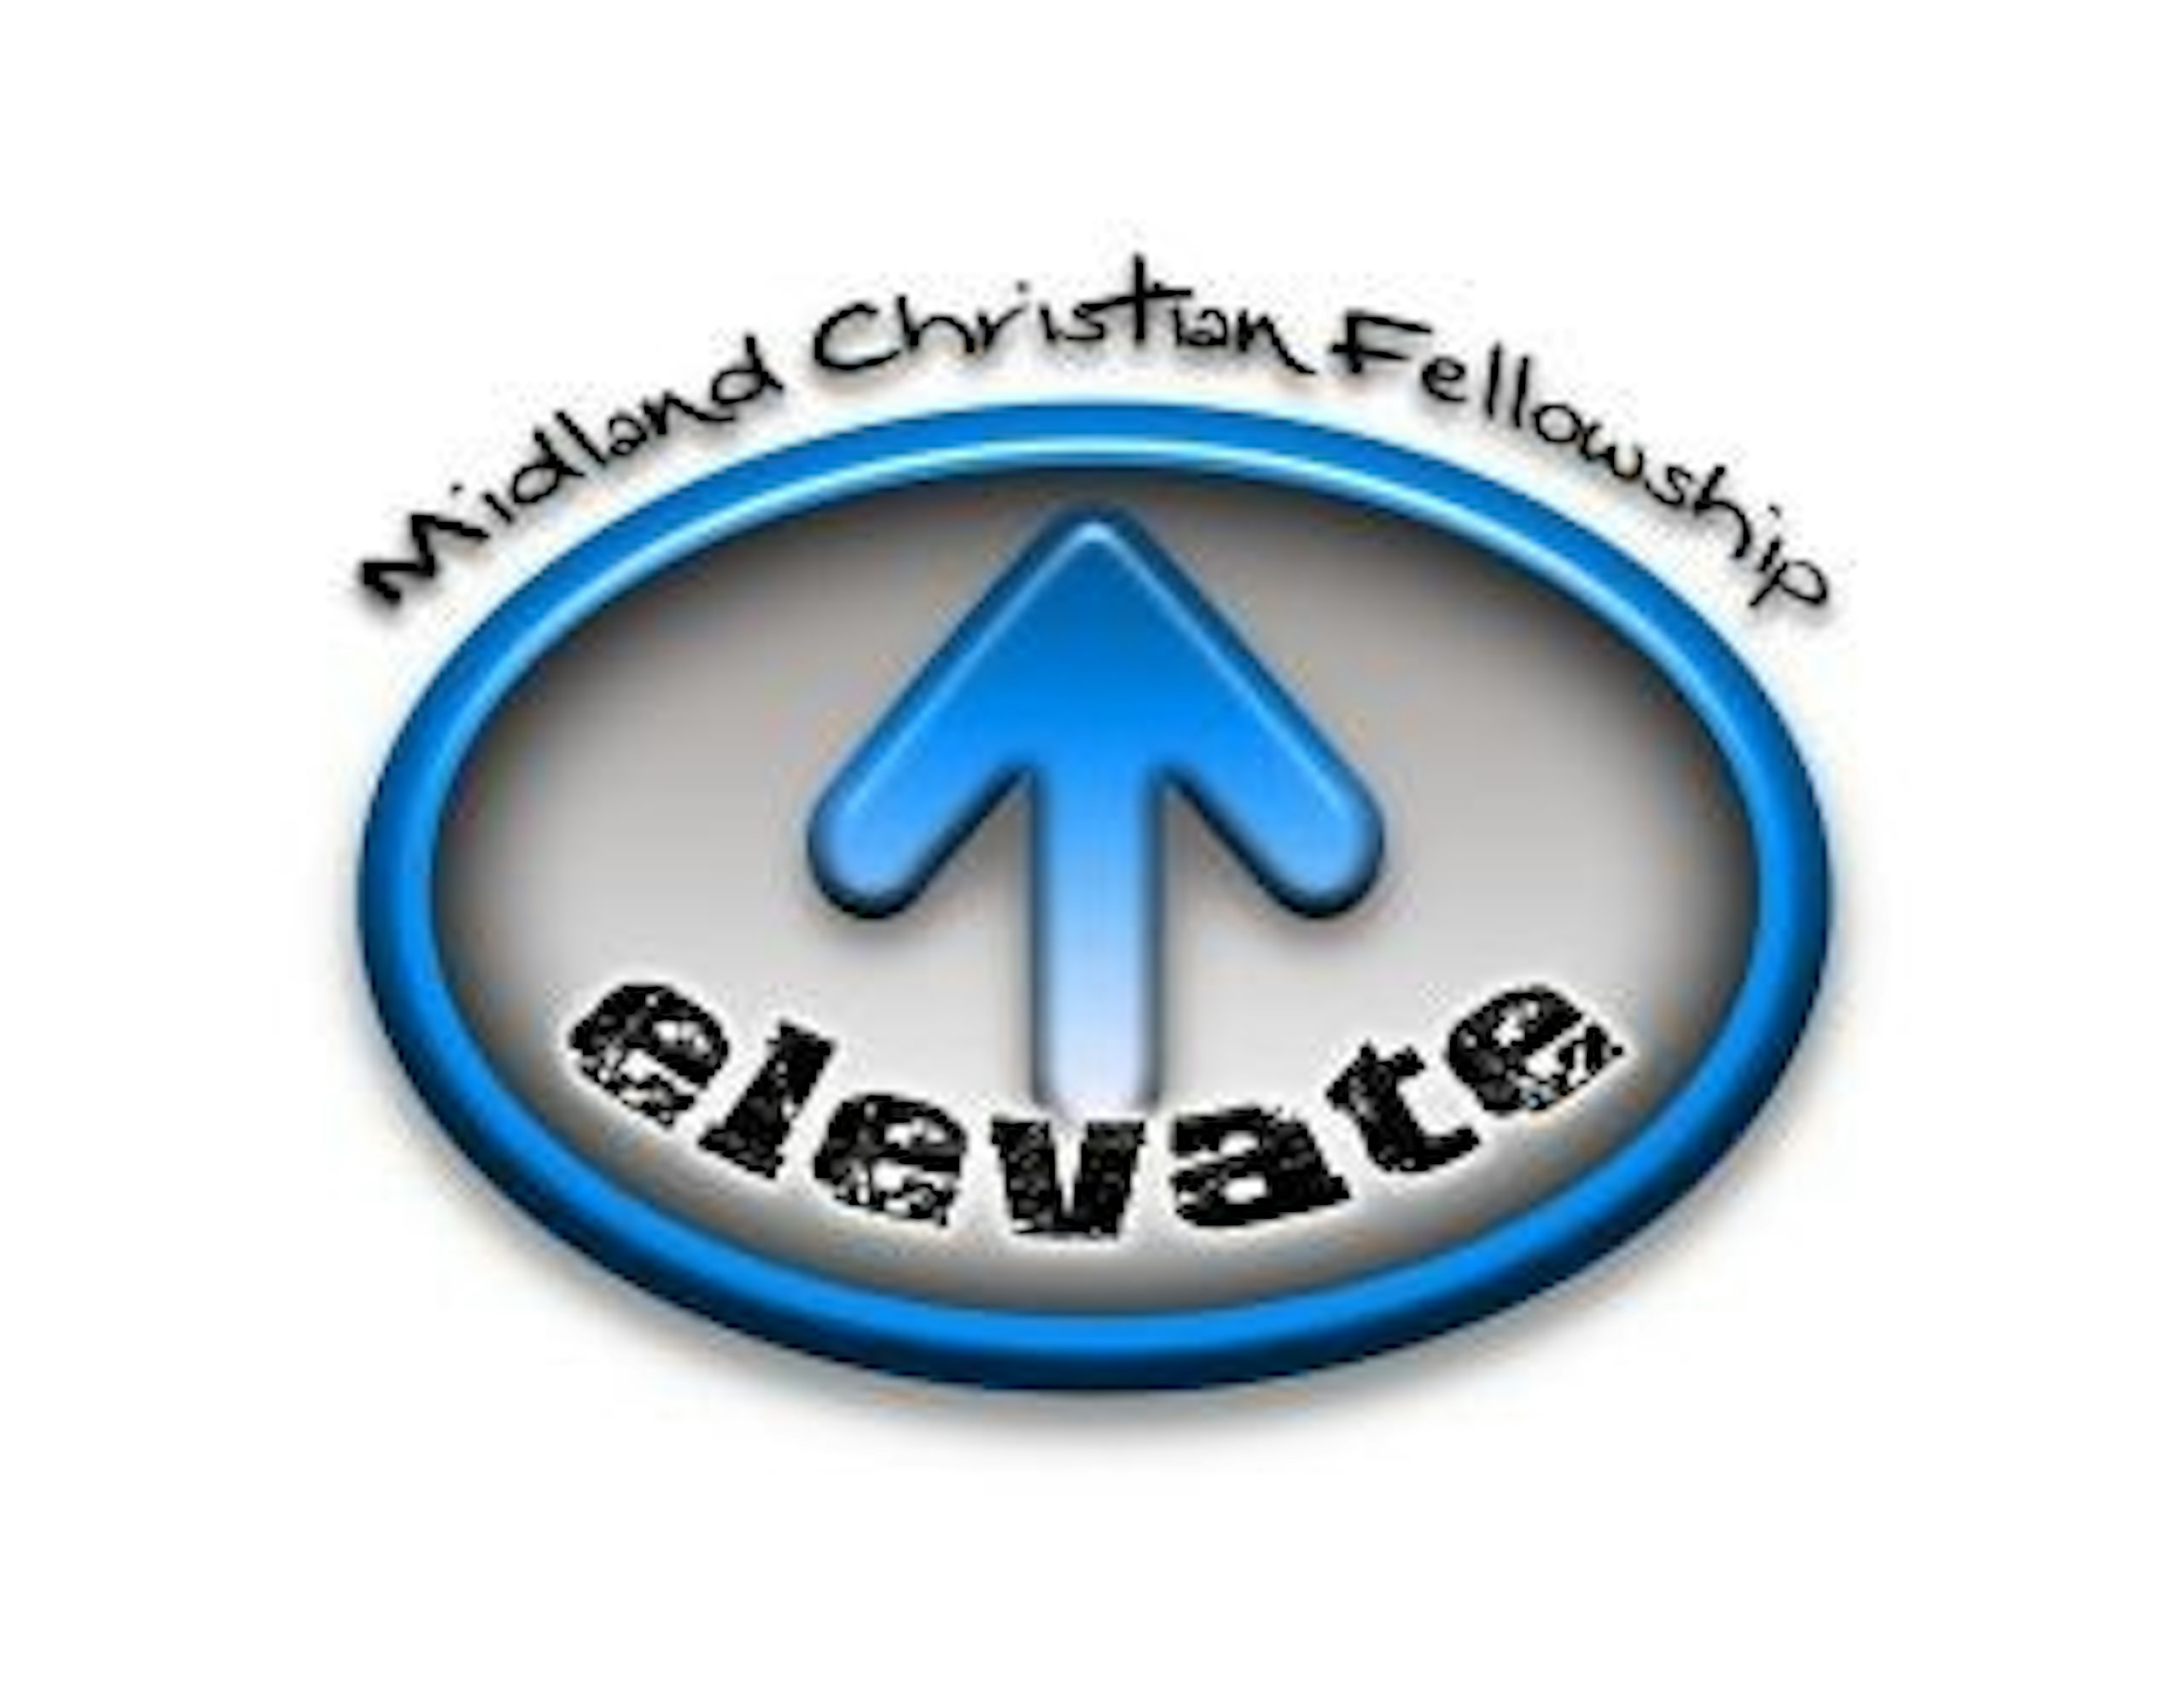 Midland Christian Fellowship